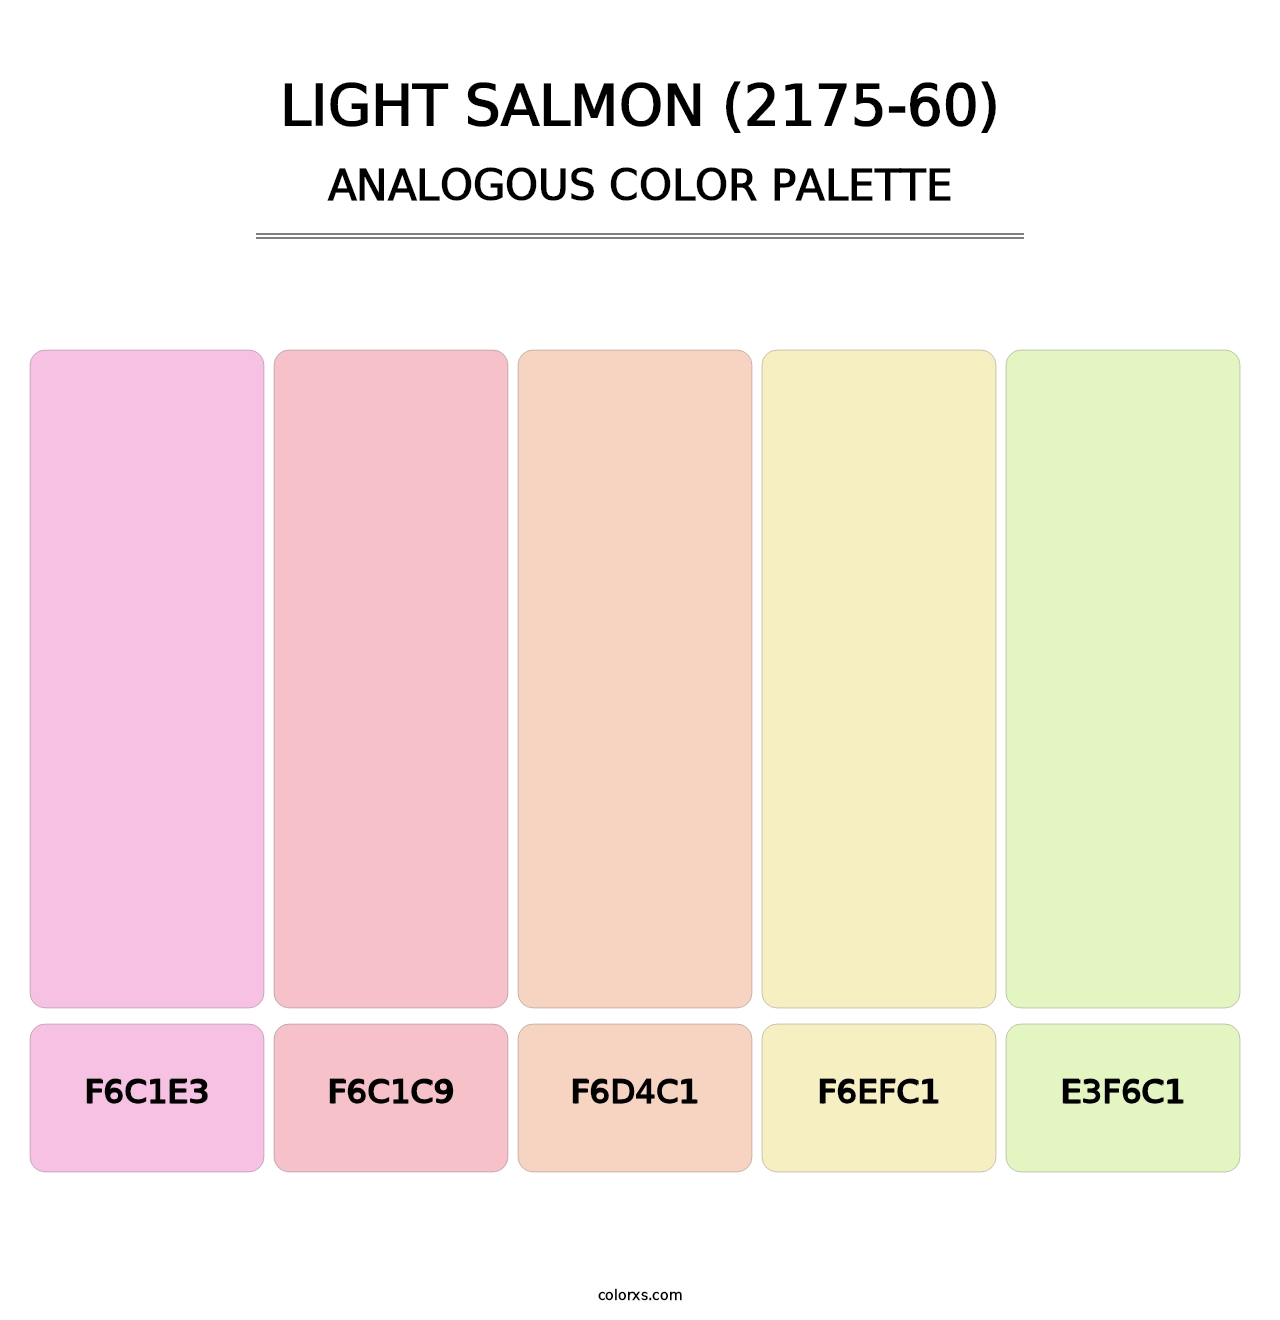 Light Salmon (2175-60) - Analogous Color Palette